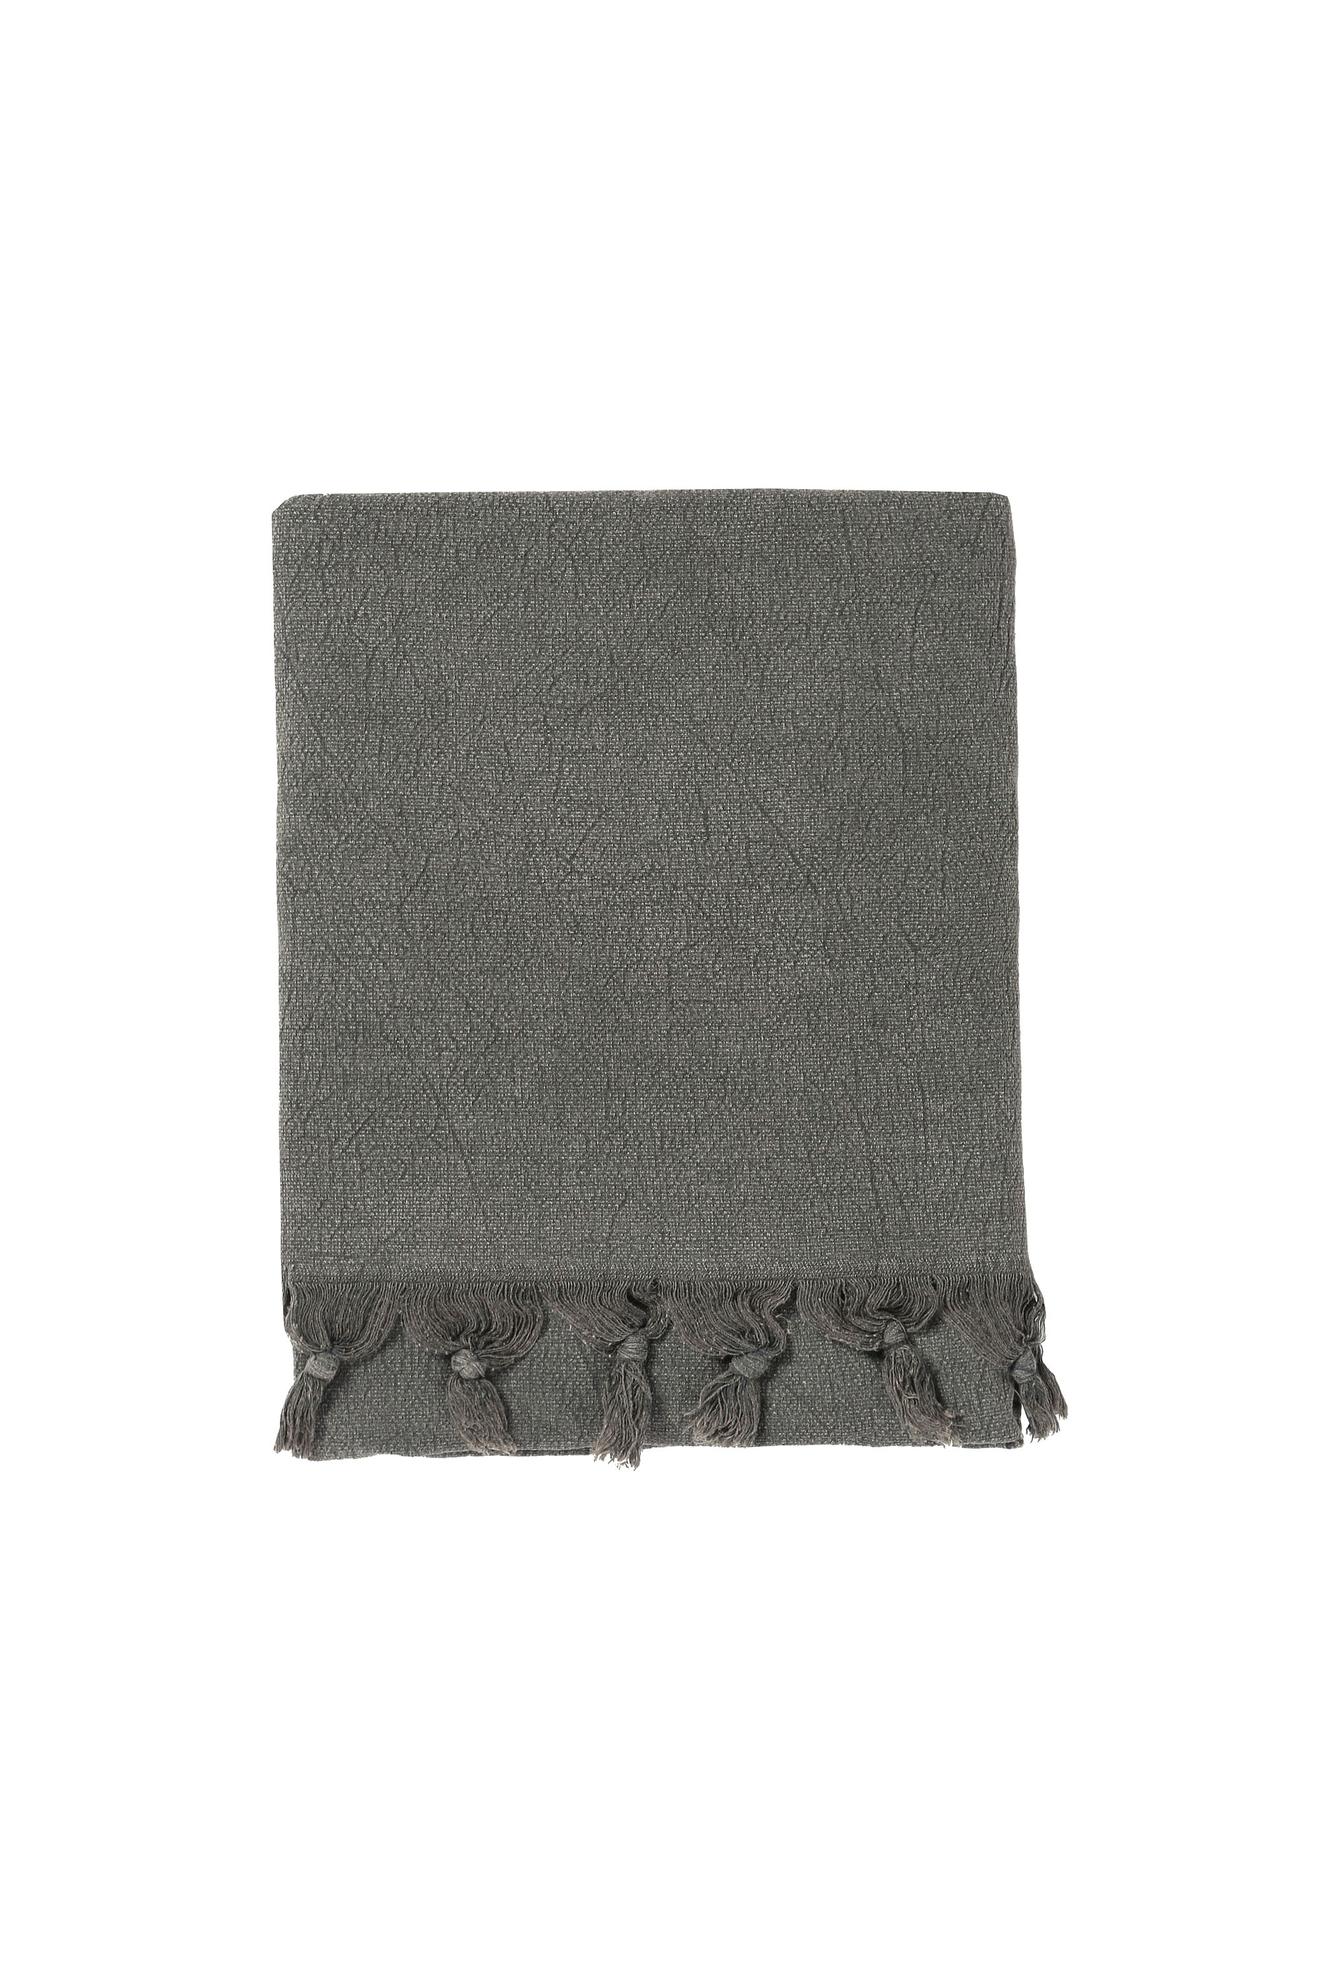 Grey gym towel with fringes 95x150 cm za 28 zł w Diesel